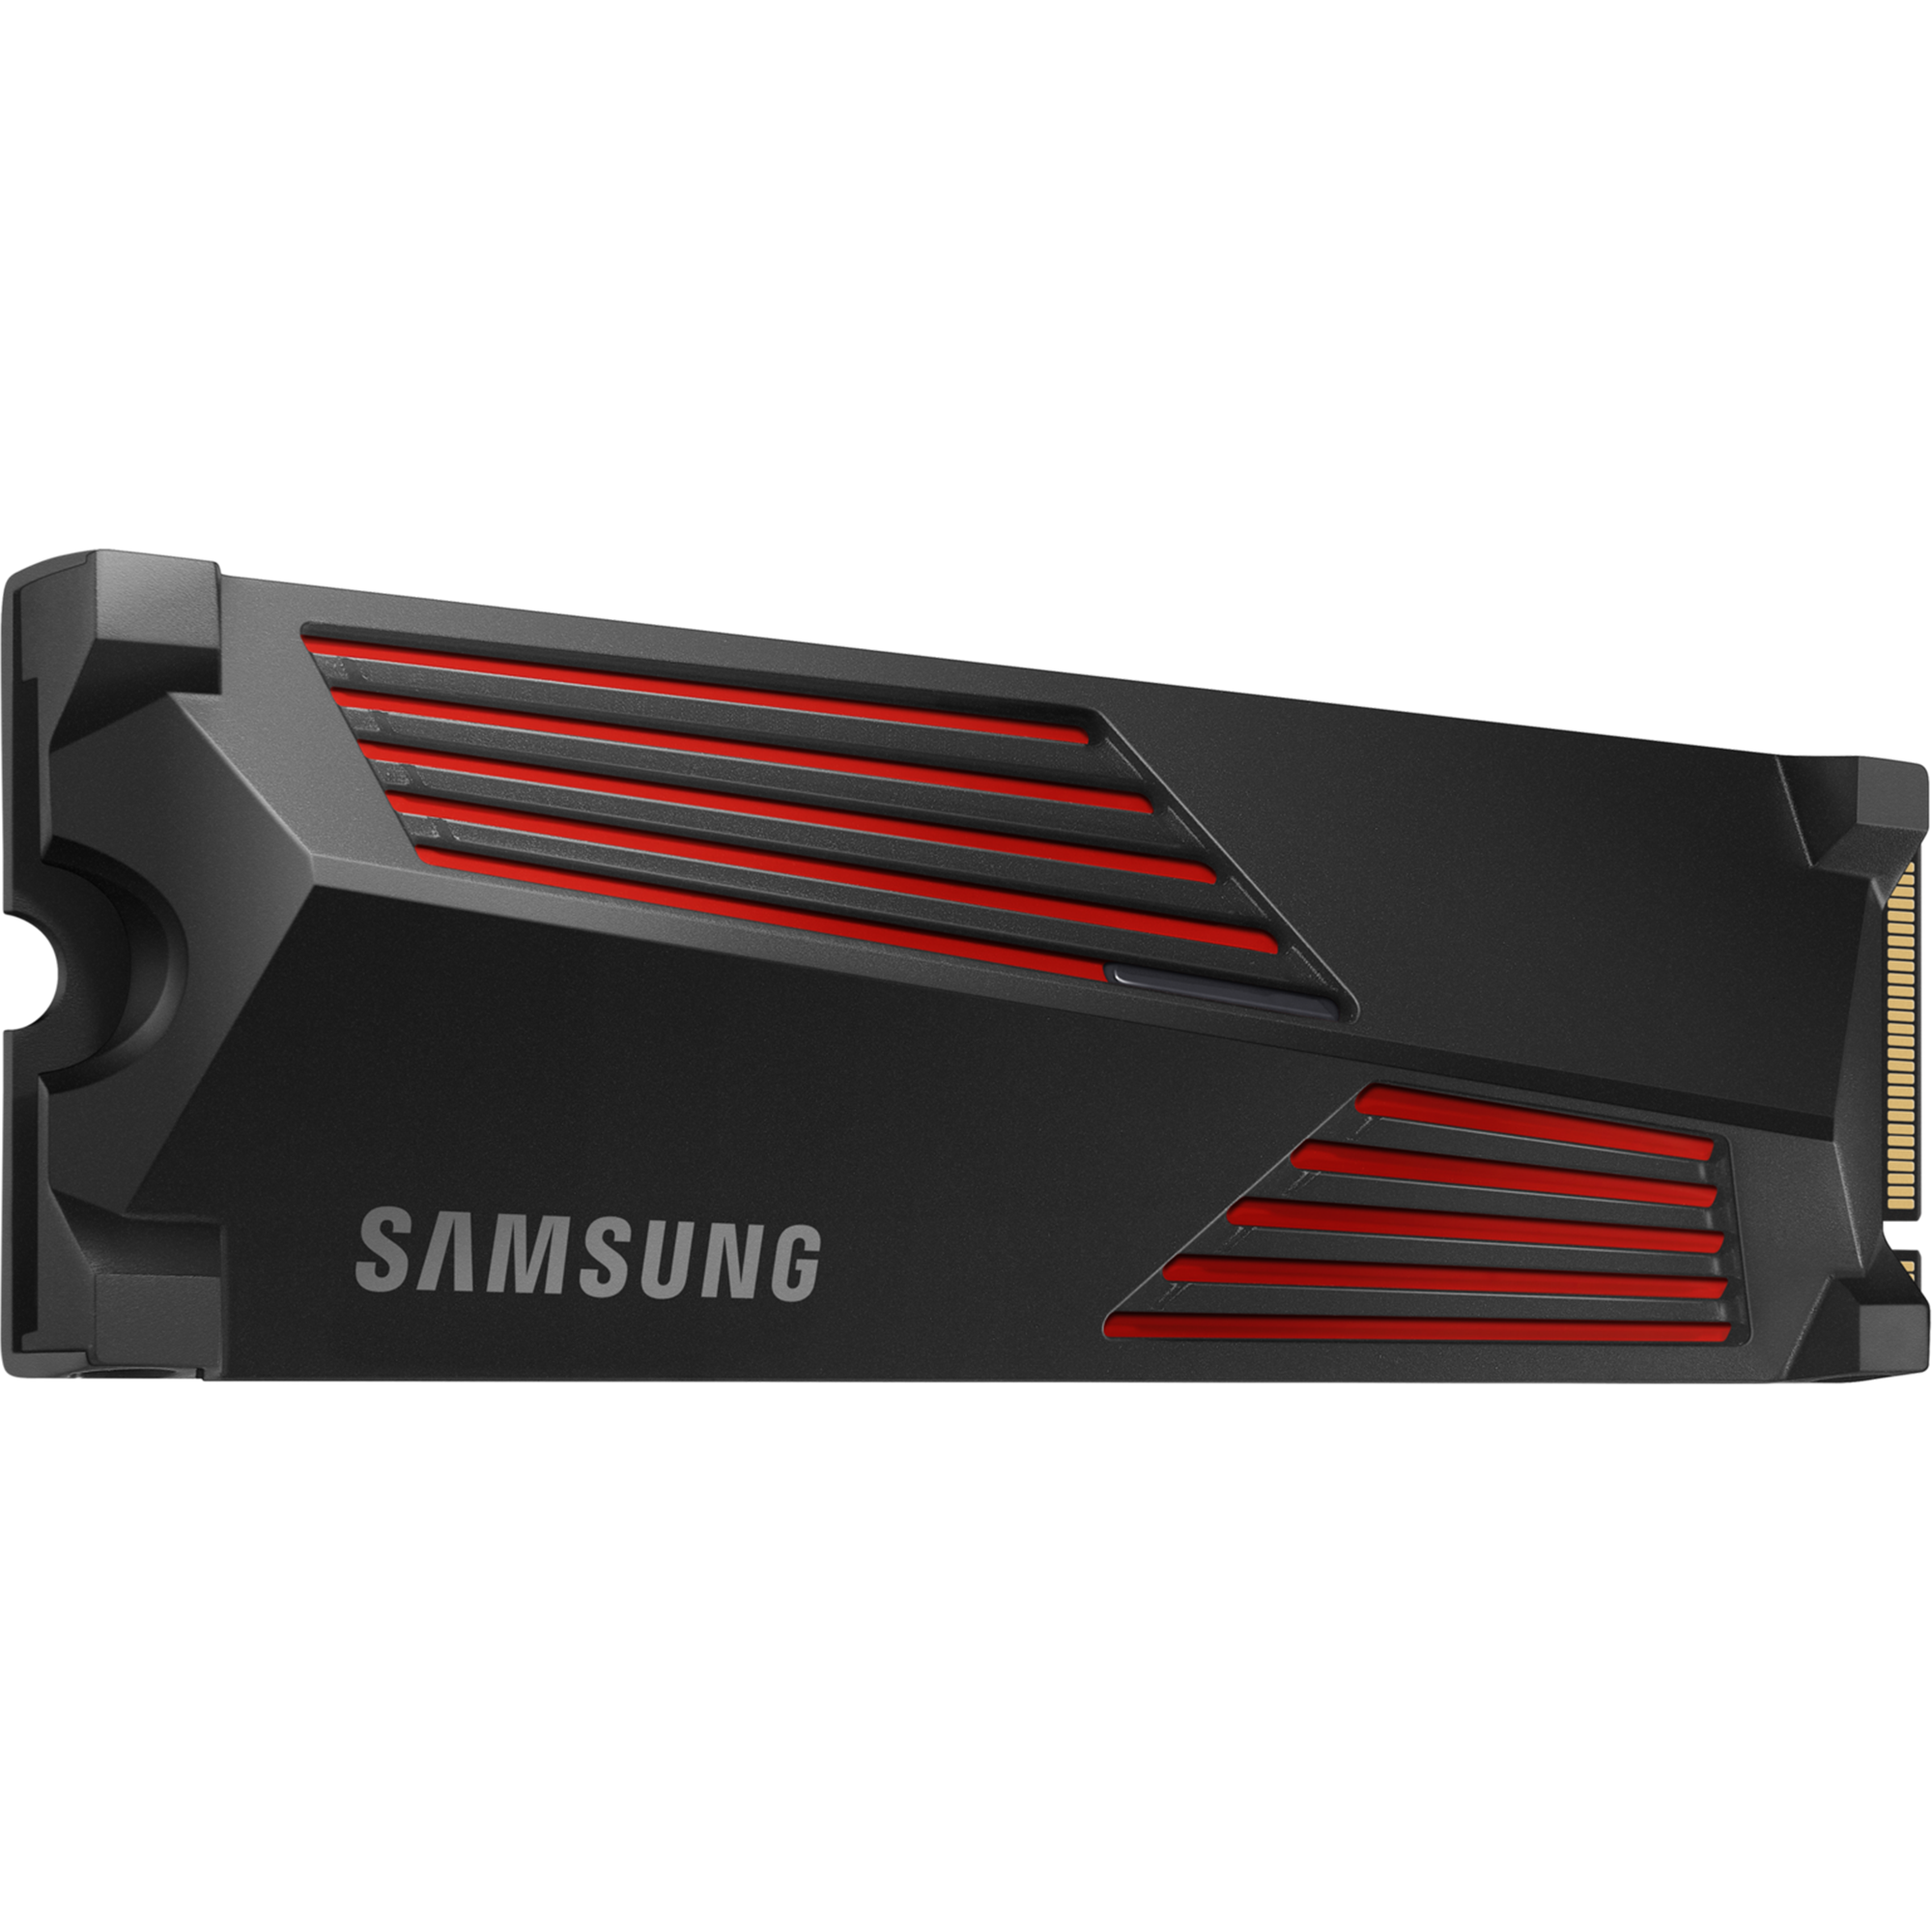 כונן SSD פנימי עם צלעות קירור Samsung 990 Pro 2TB Heatsink PCIe 4.0 NVMe M.2 - צבע שחור חמש שנות אחריות ע